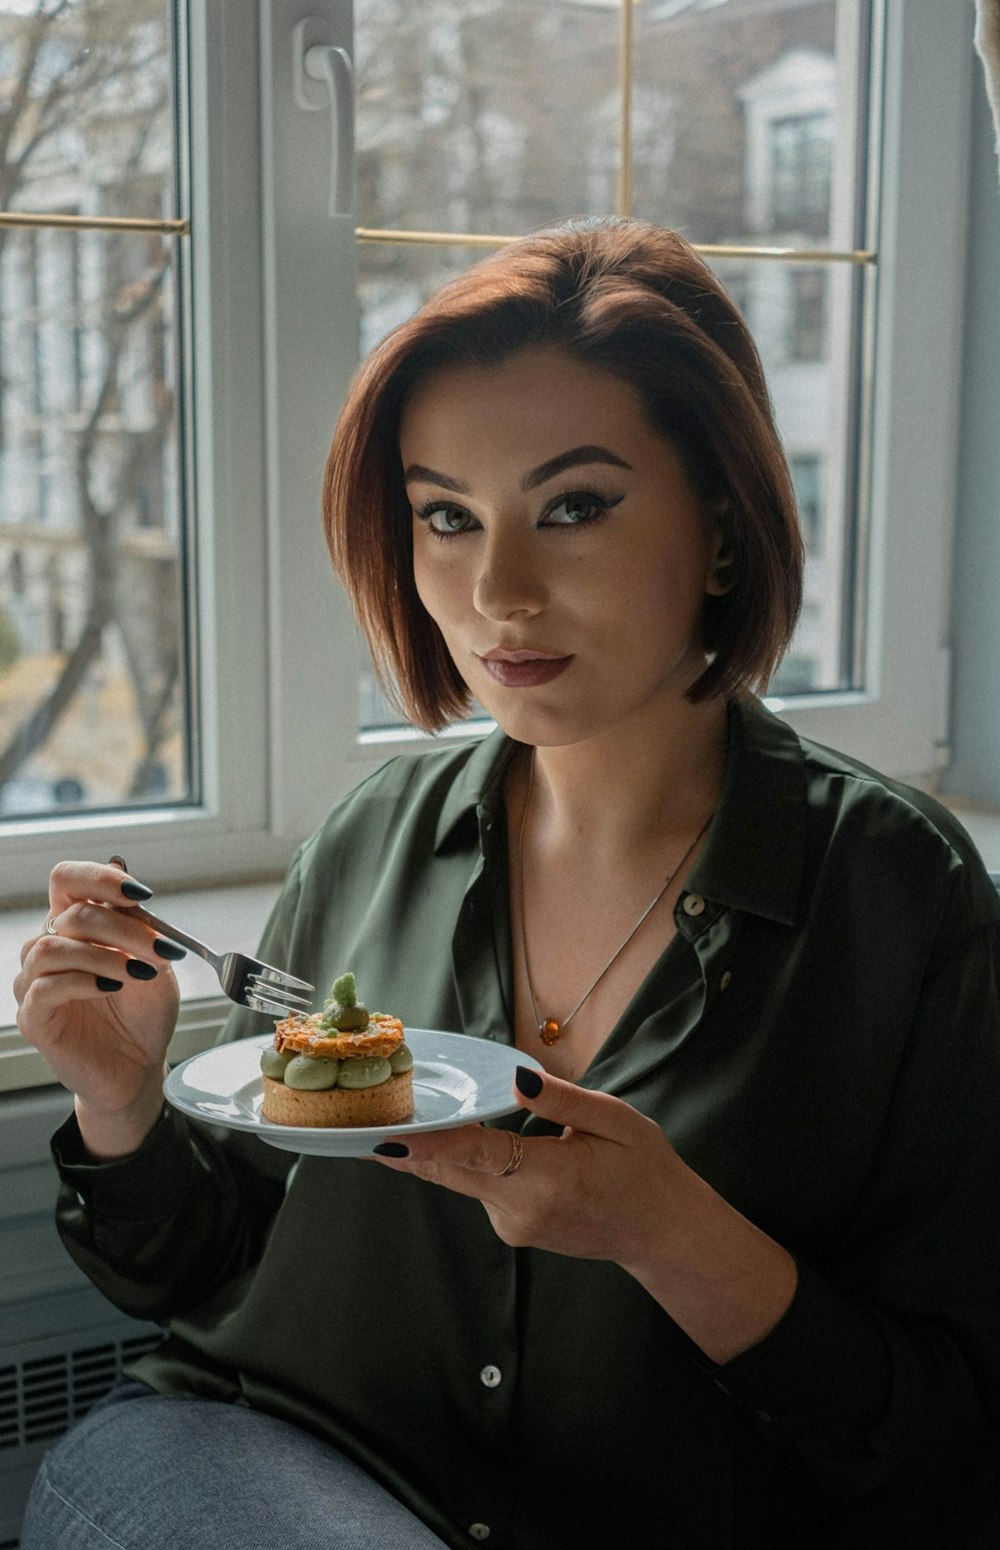 Une femme tenant une assiette de nourriture devant une fenêtre